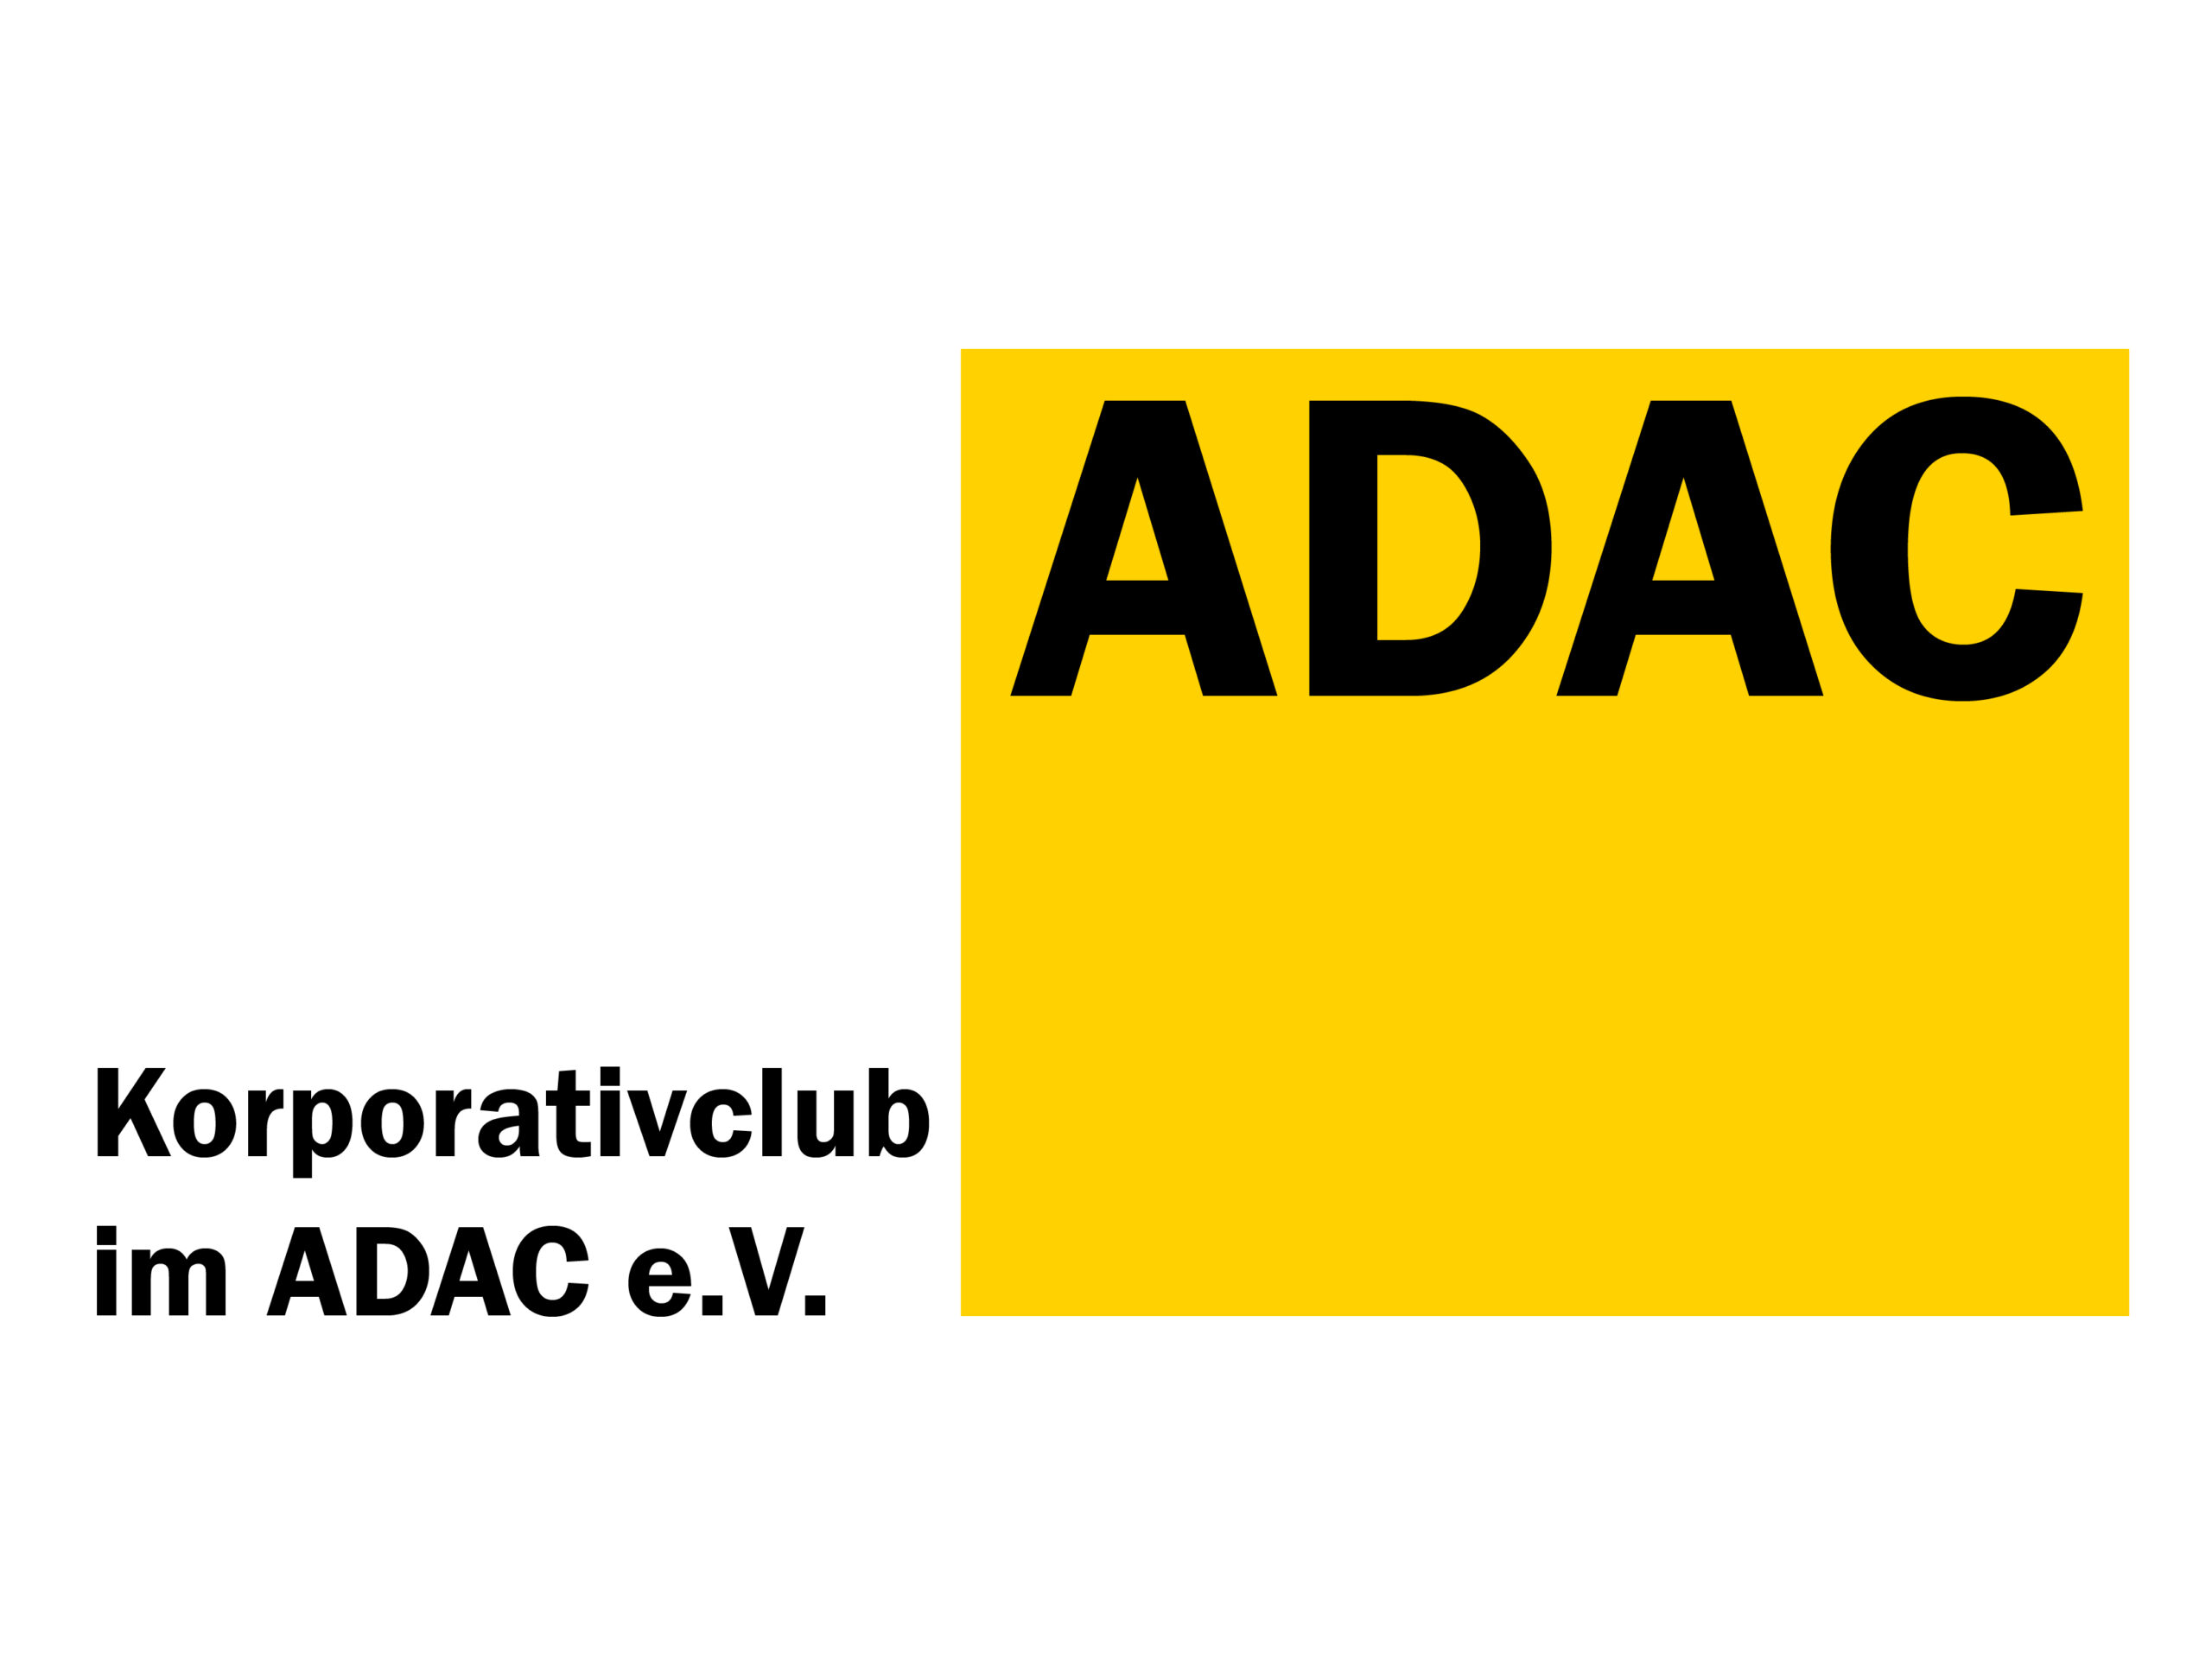 ADAC : Information für ADAC Korporativclubs: 38% Rabattaktion TomTom GO Navigation App